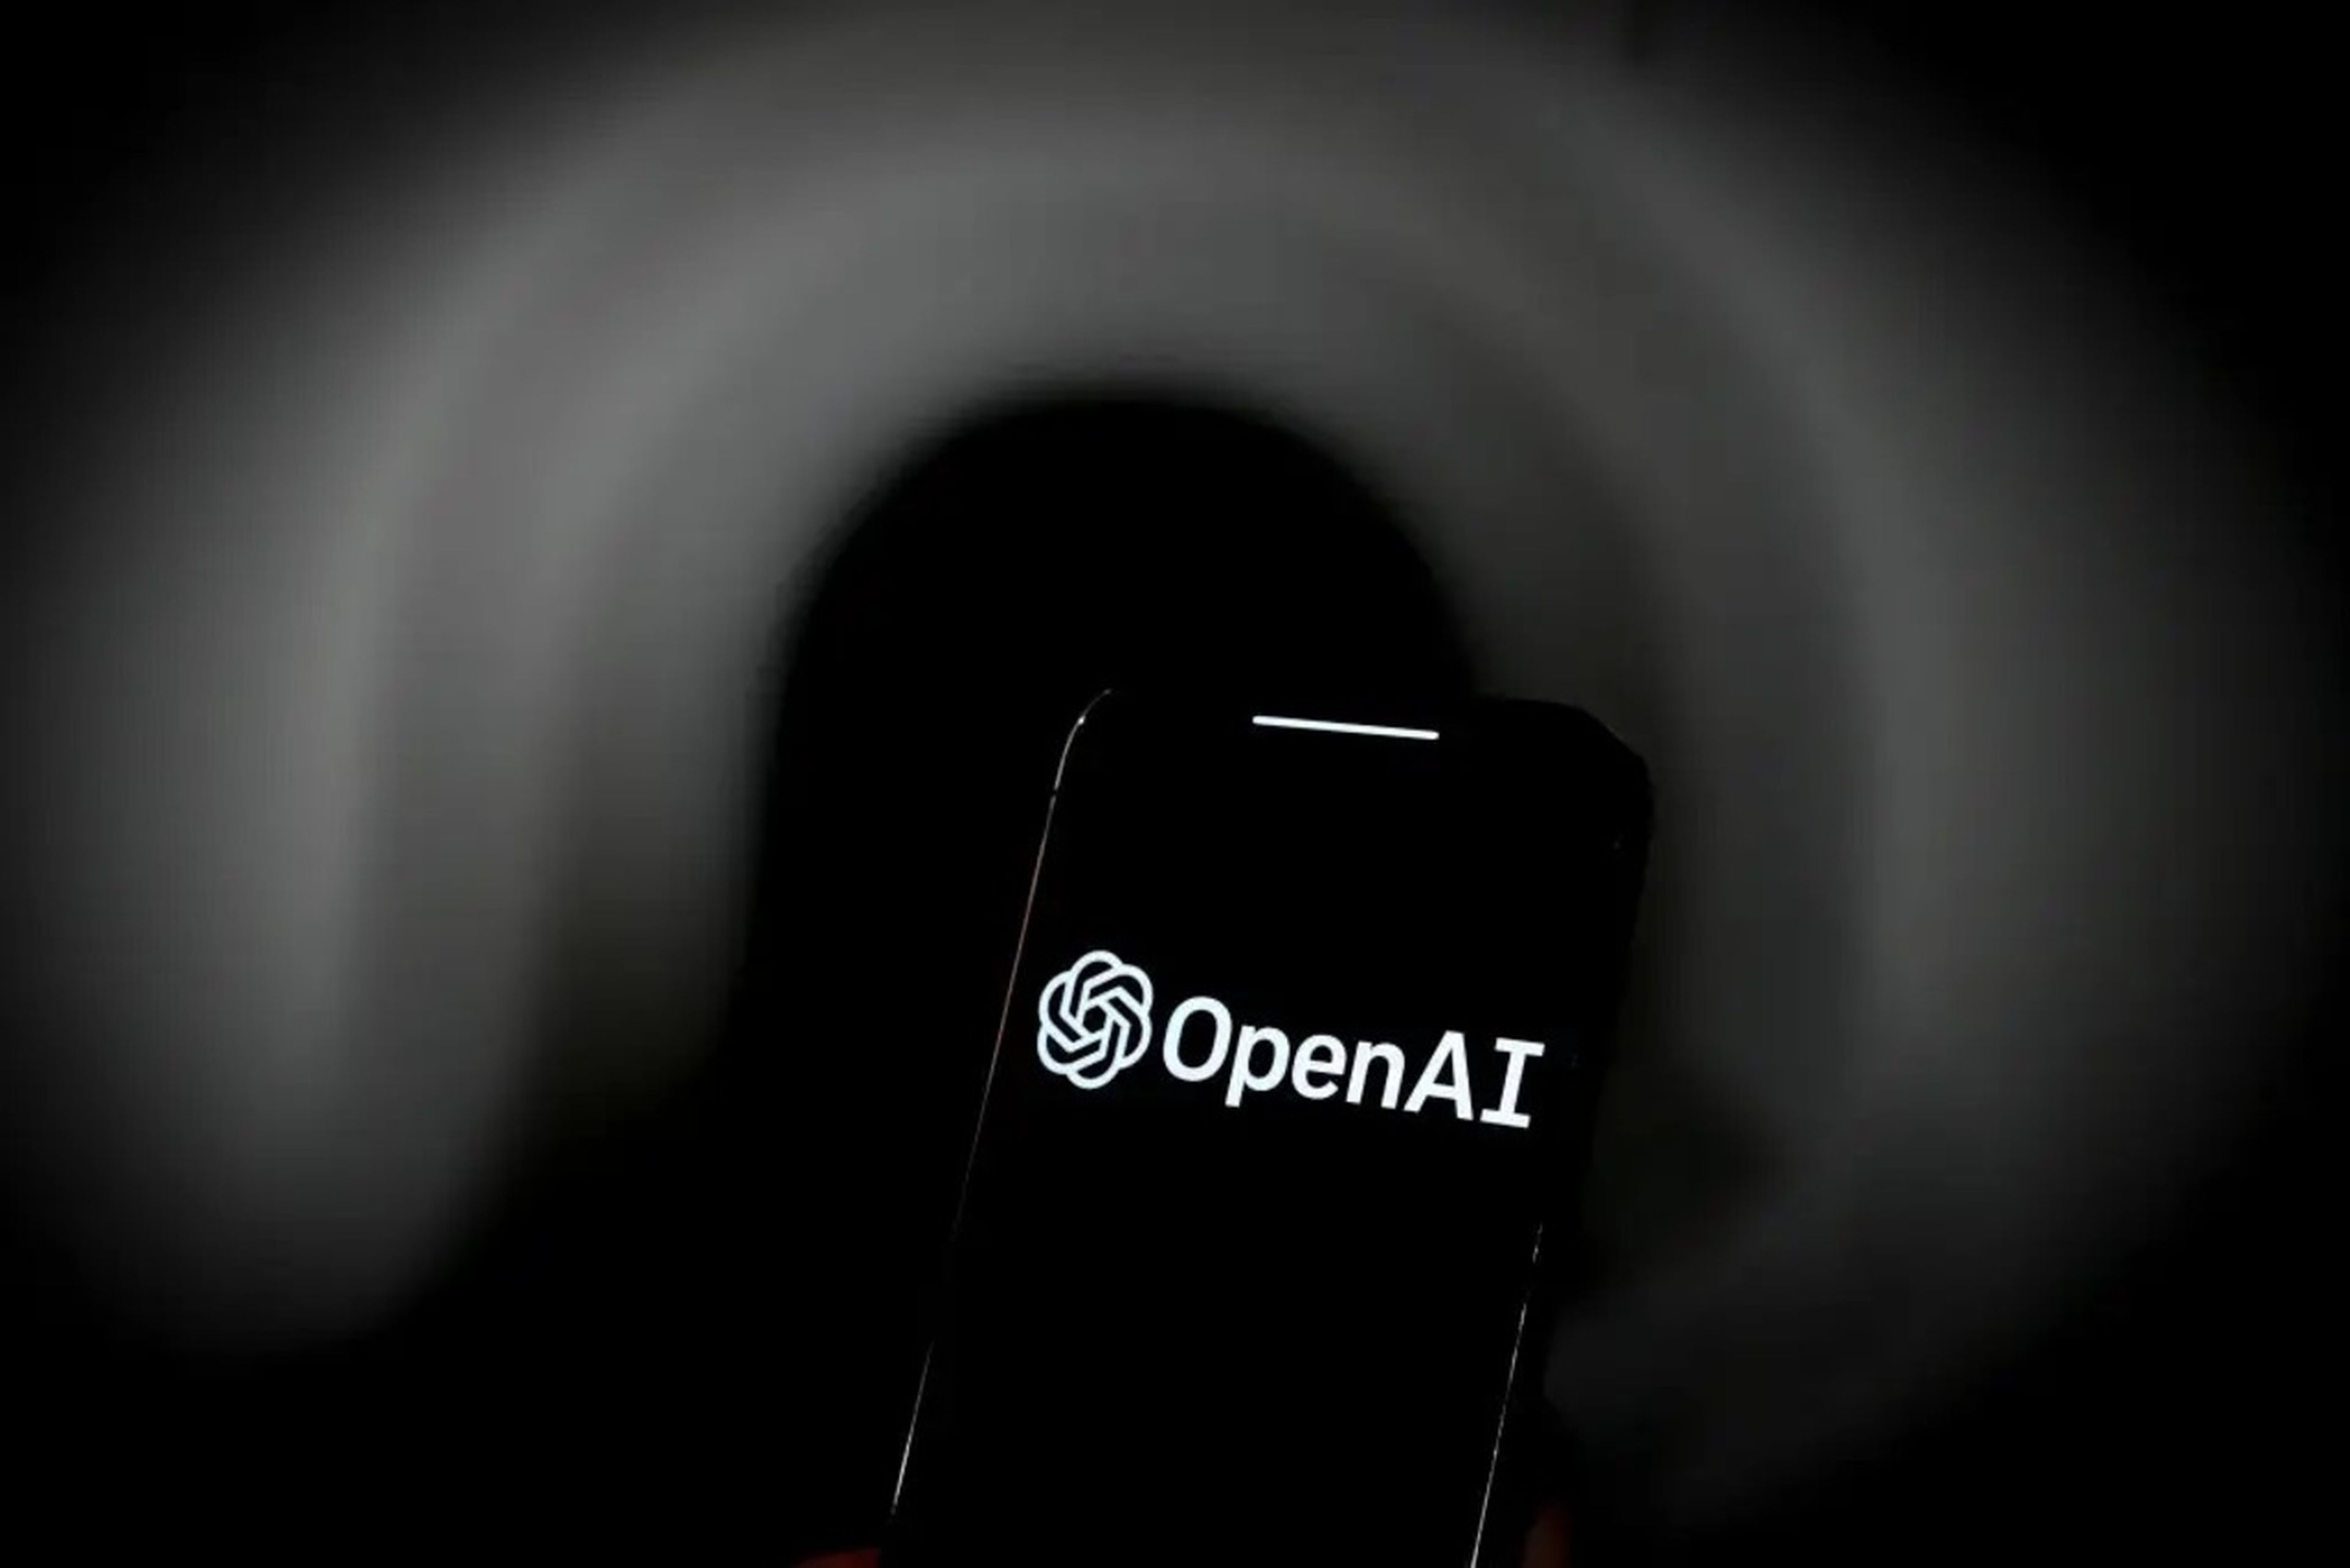 Una imagen de un teléfono móvil con el logo de OpenAI, la desarrolladora de ChatGPT.